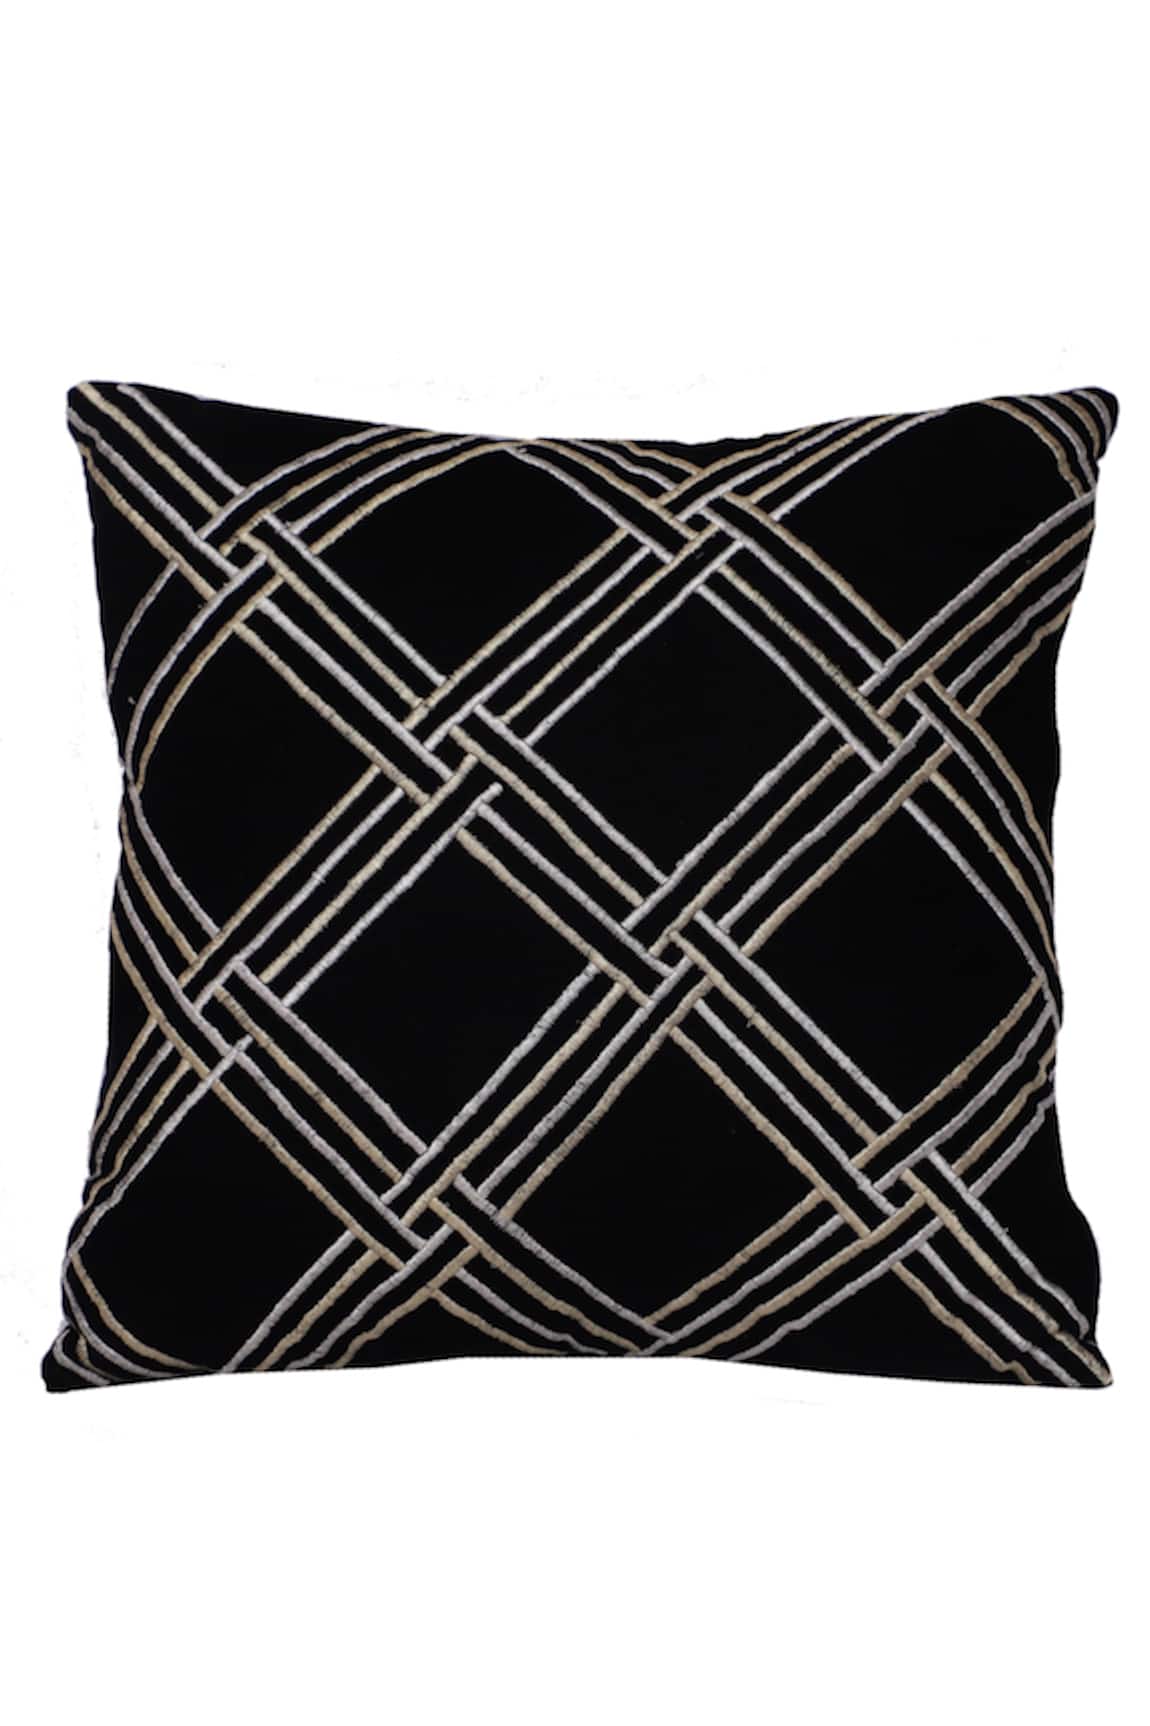 La Paloma Geometric Embroidered Square Cushion Cover